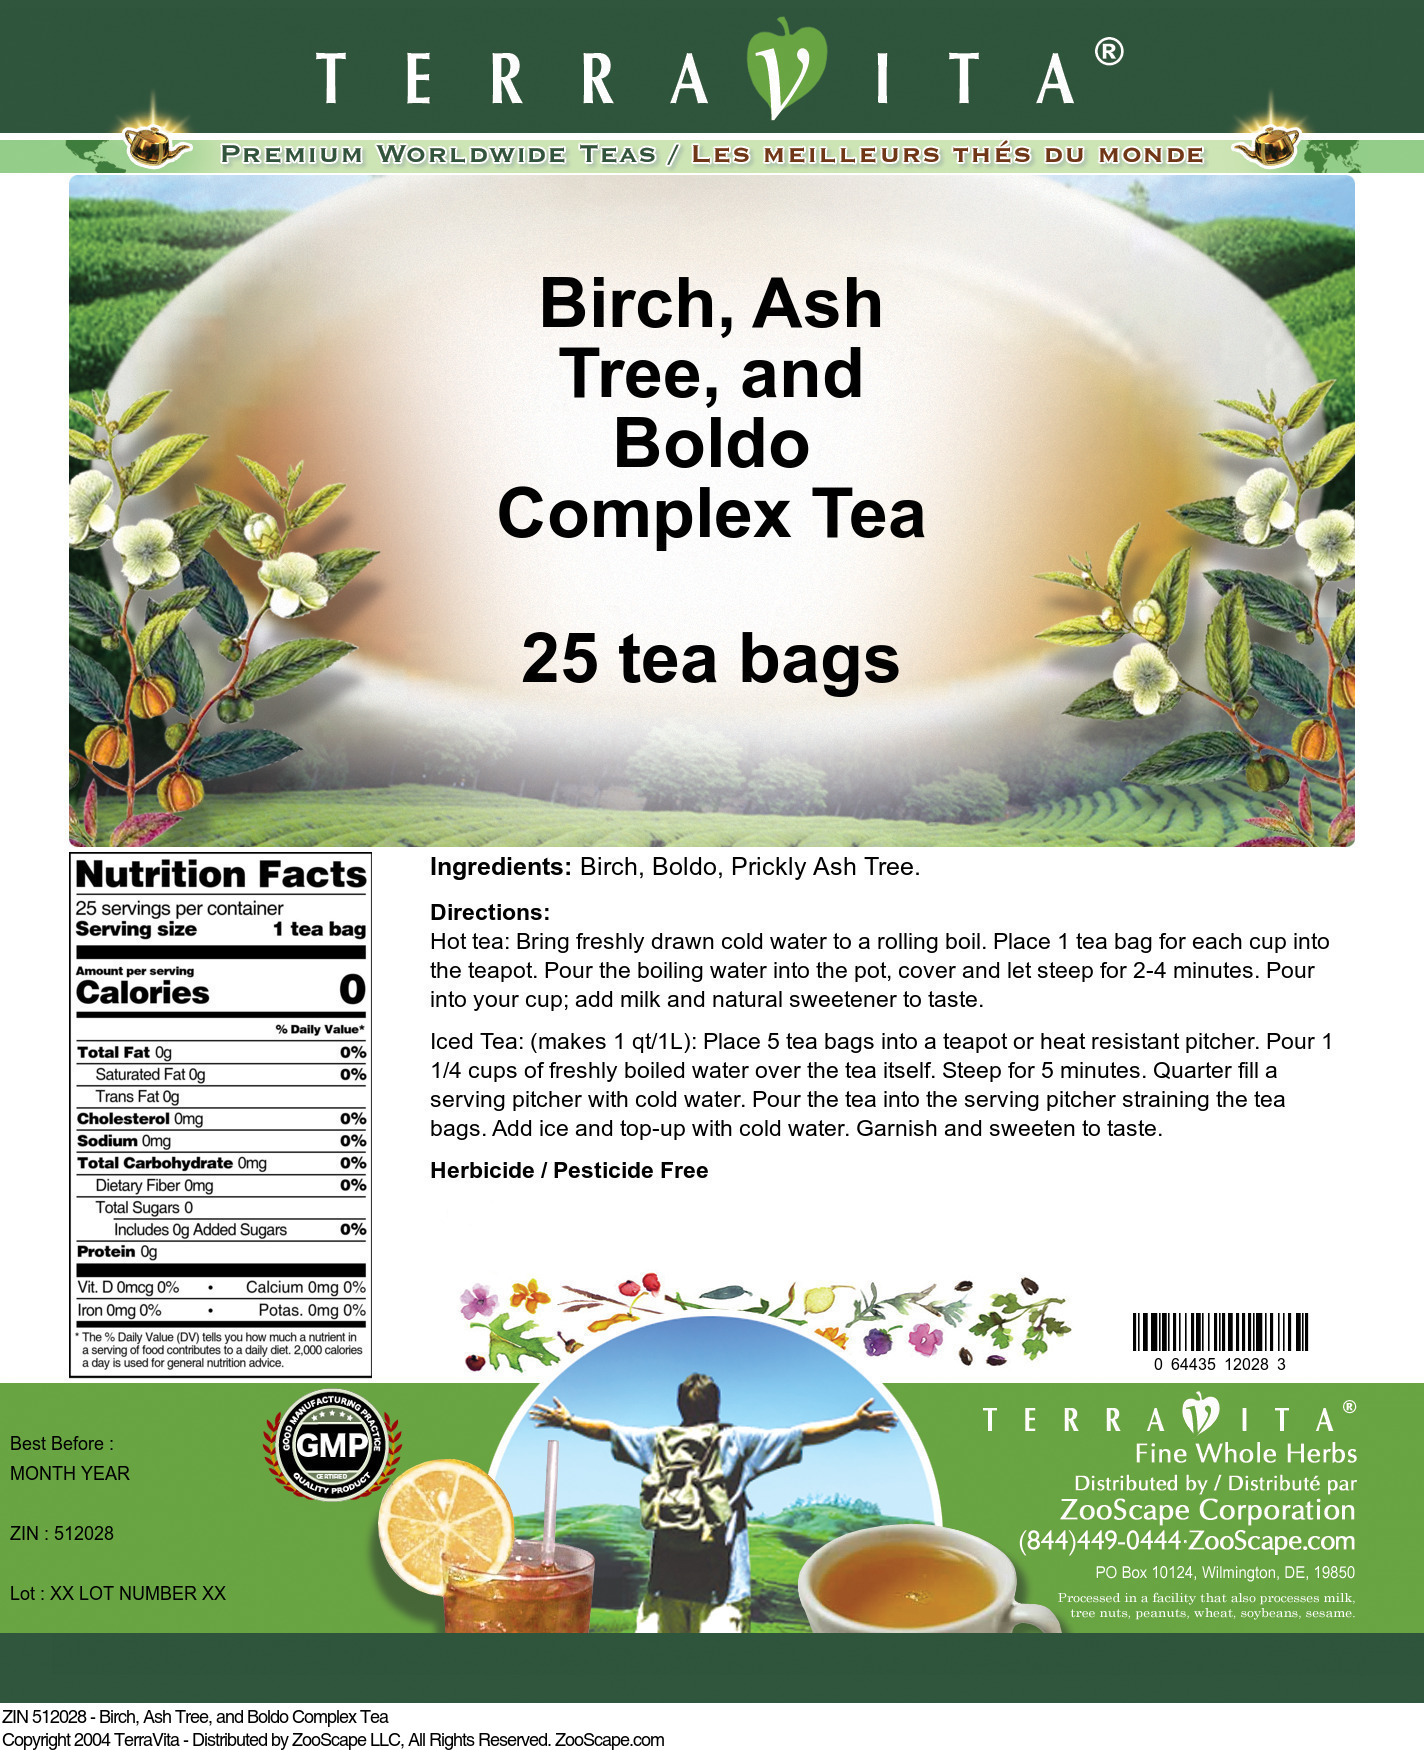 Birch, Ash Tree, and Boldo Complex Tea - Label